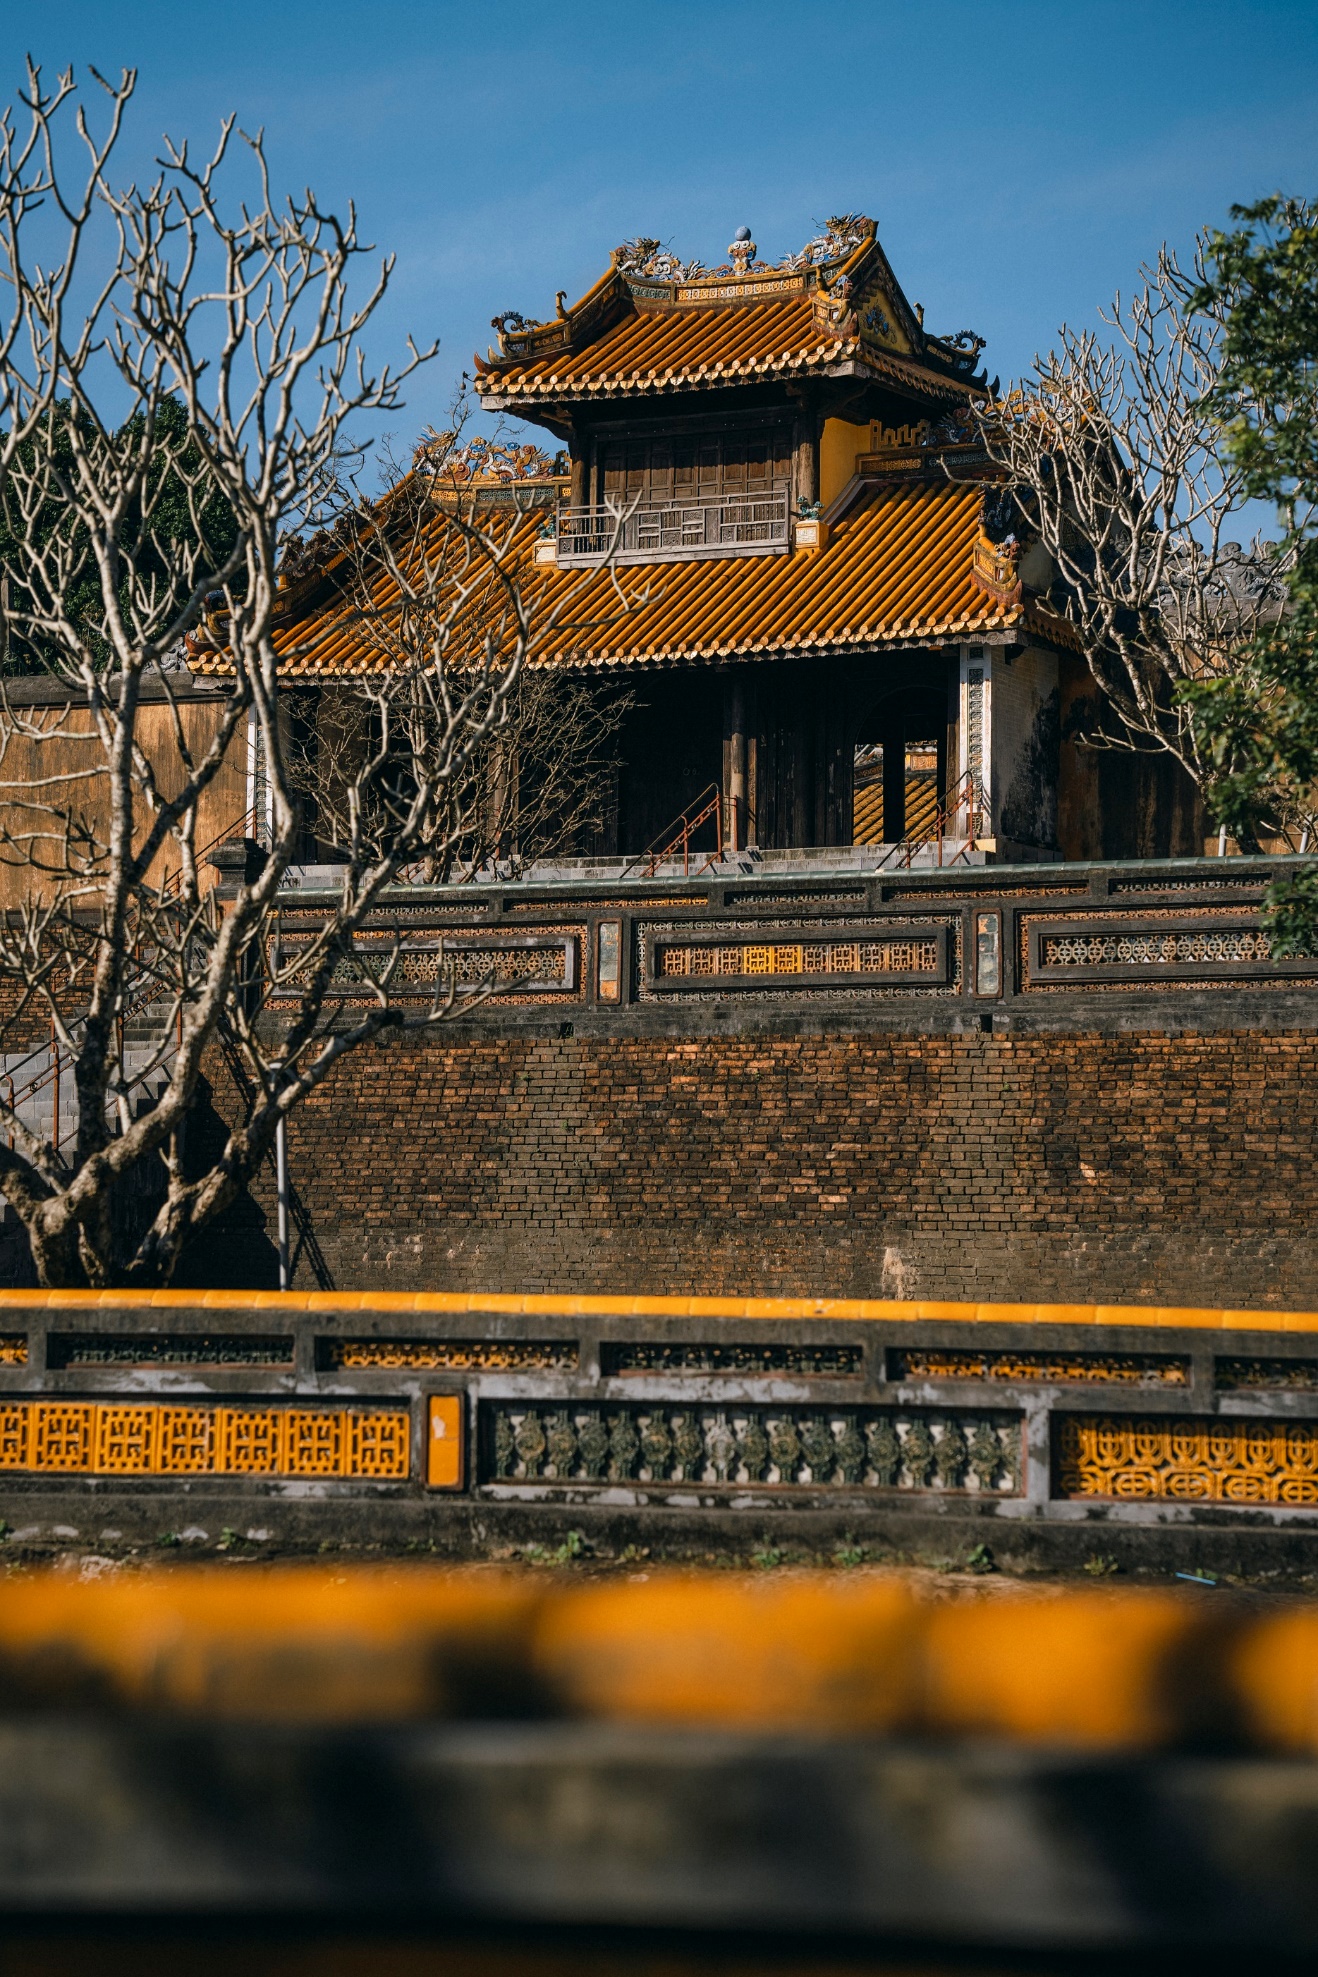 Chiêm ngưỡng bức tranh thiên nhiên tuyệt đẹp ở lăng vị vua triều Nguyễn - 13